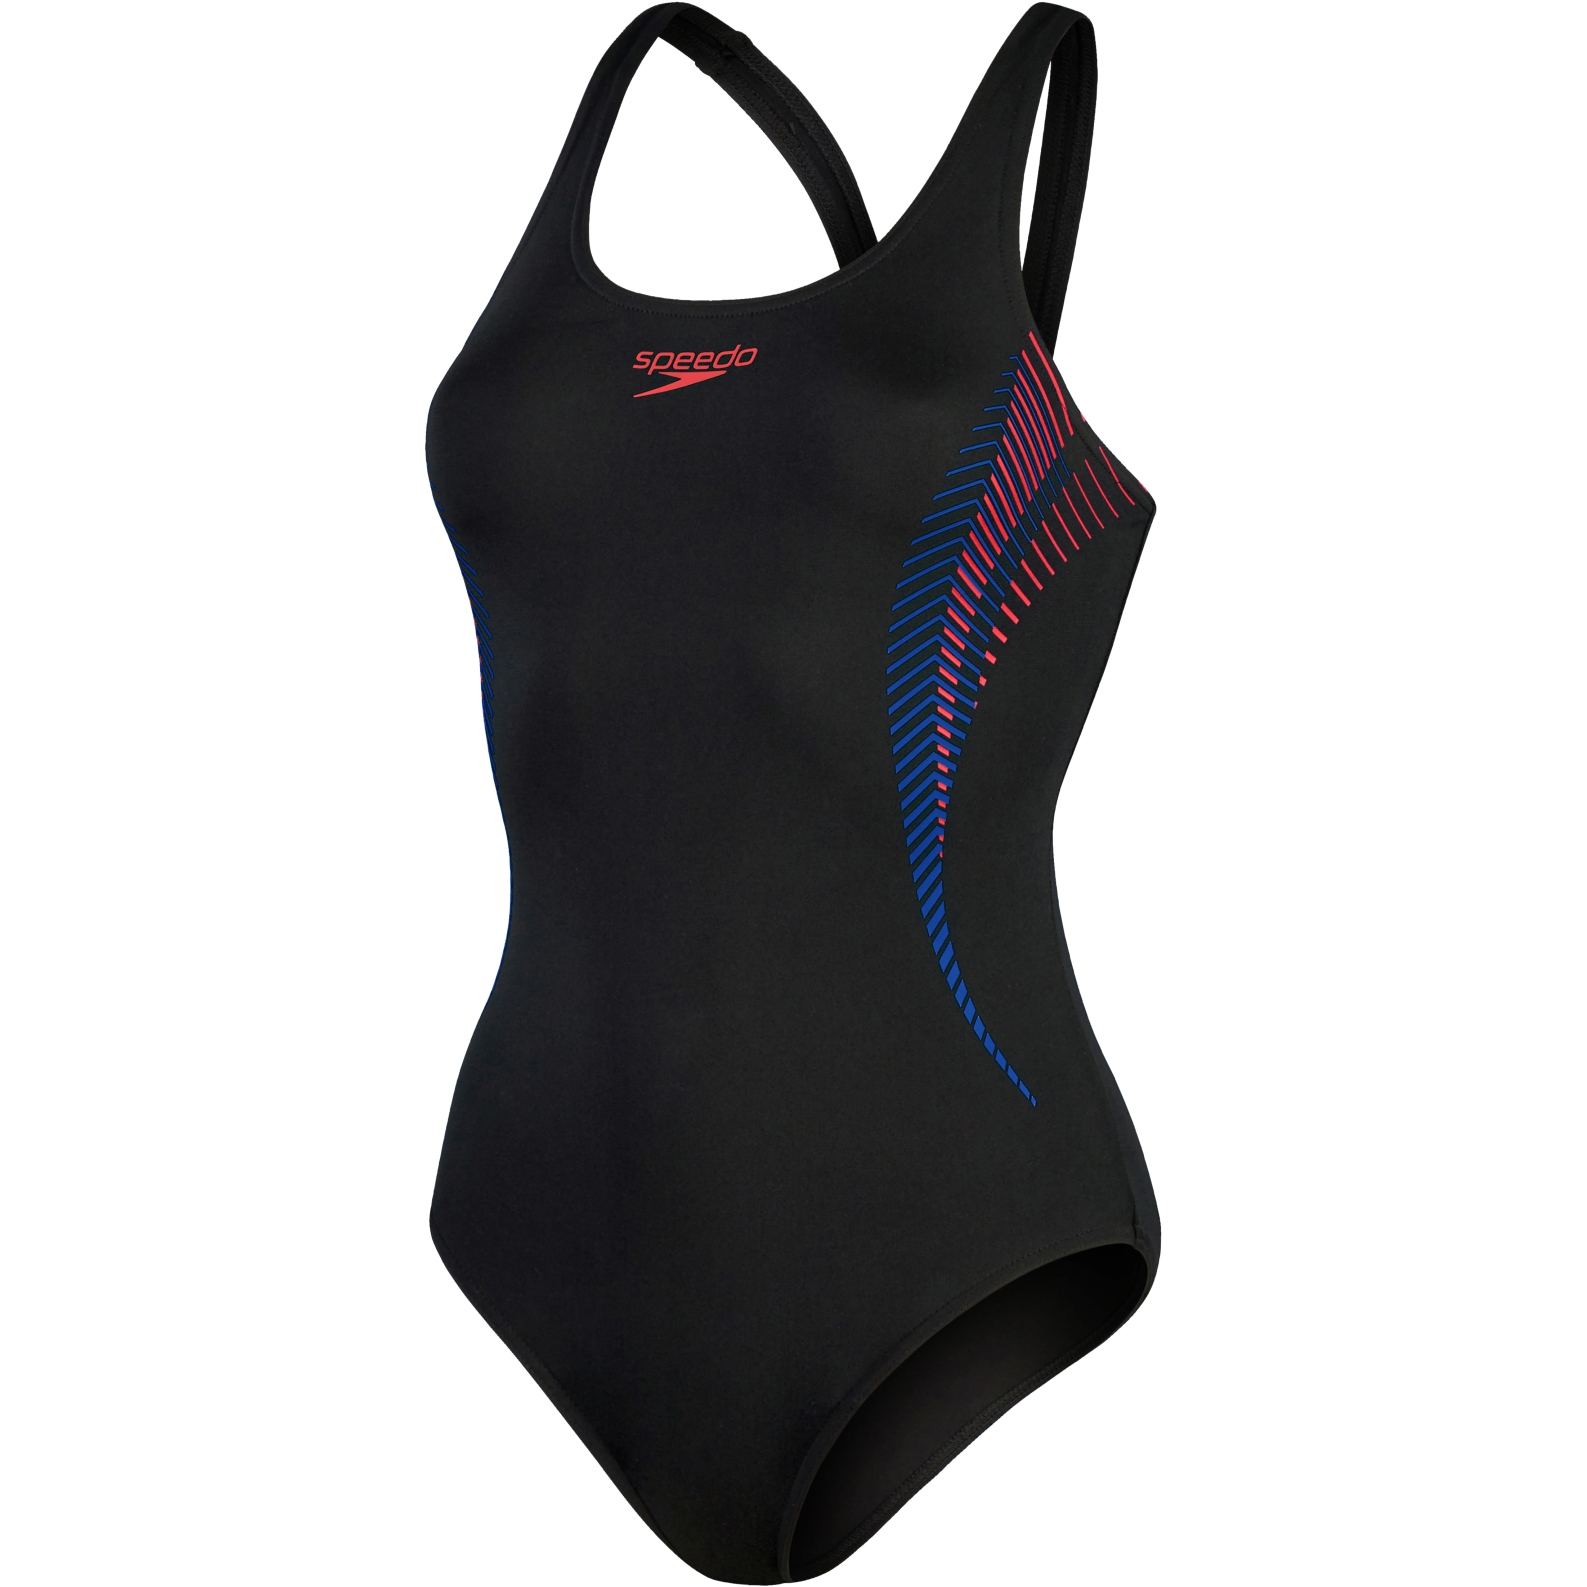 Produktbild von Speedo Placement Muscleback Badeanzug Damen - black/fed red/chroma blue